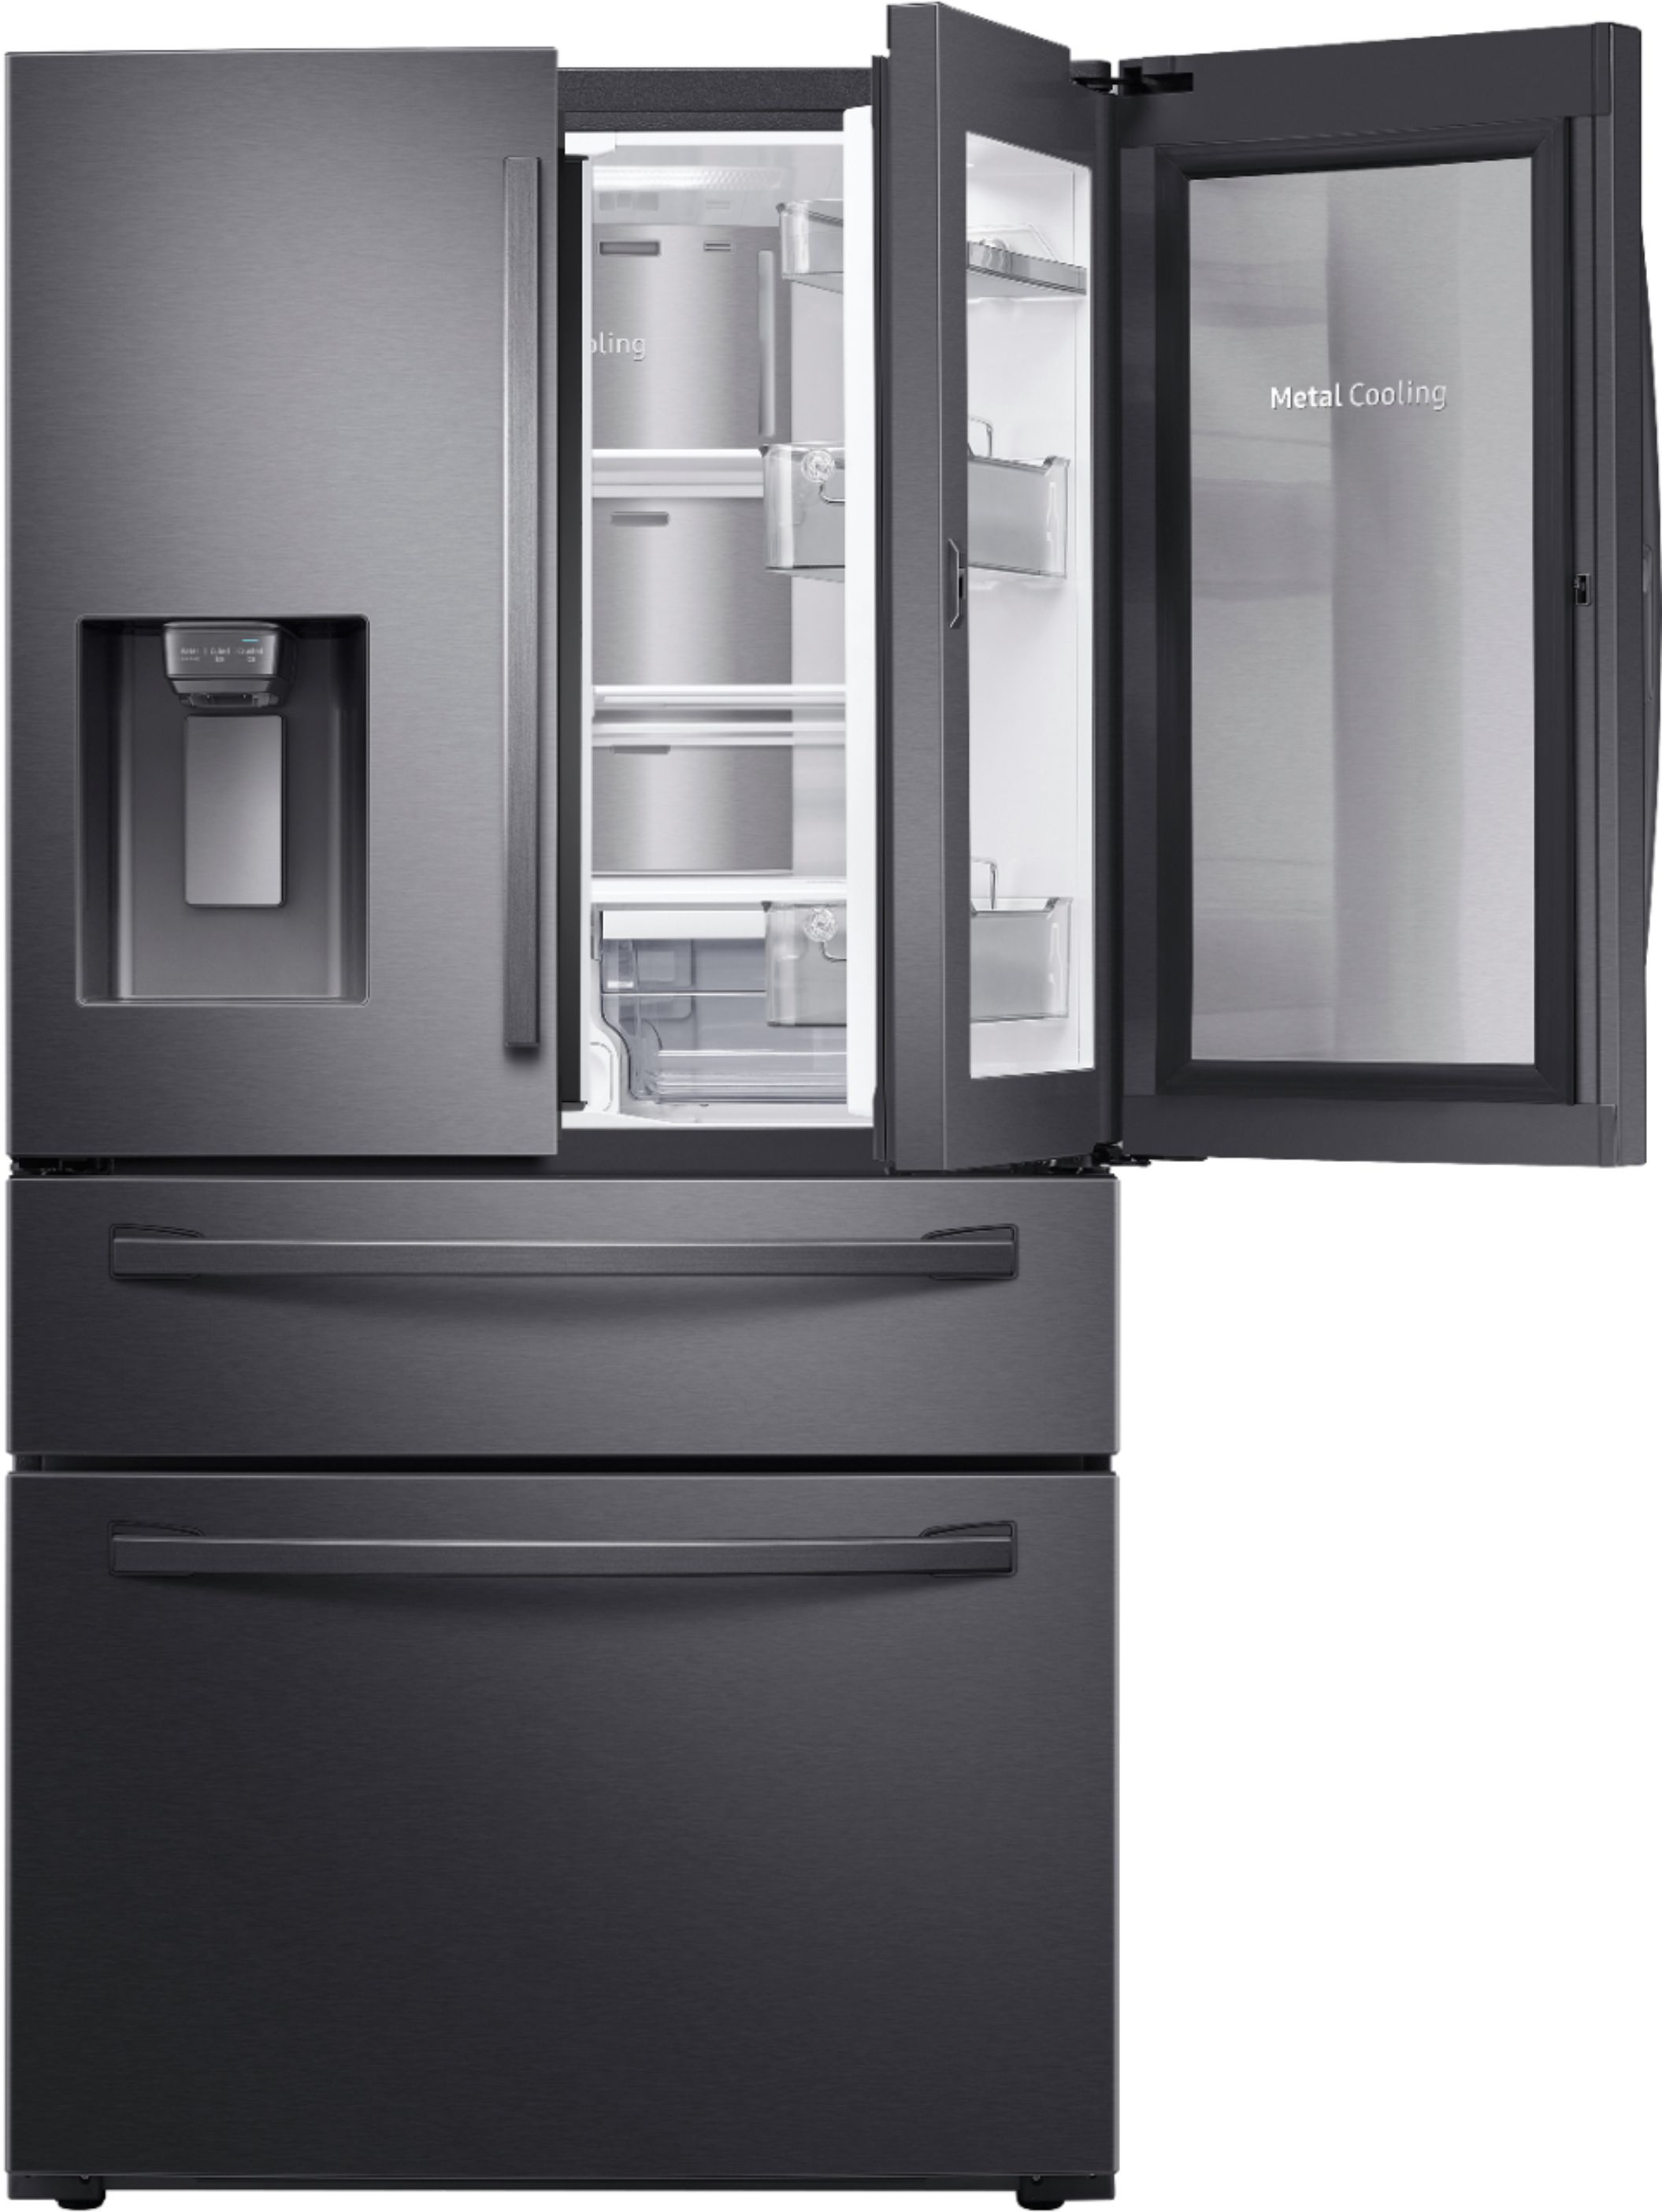 Samsung 27.8 cu. ft. 4-Door French Door Refrigerator with Food Showcase ...